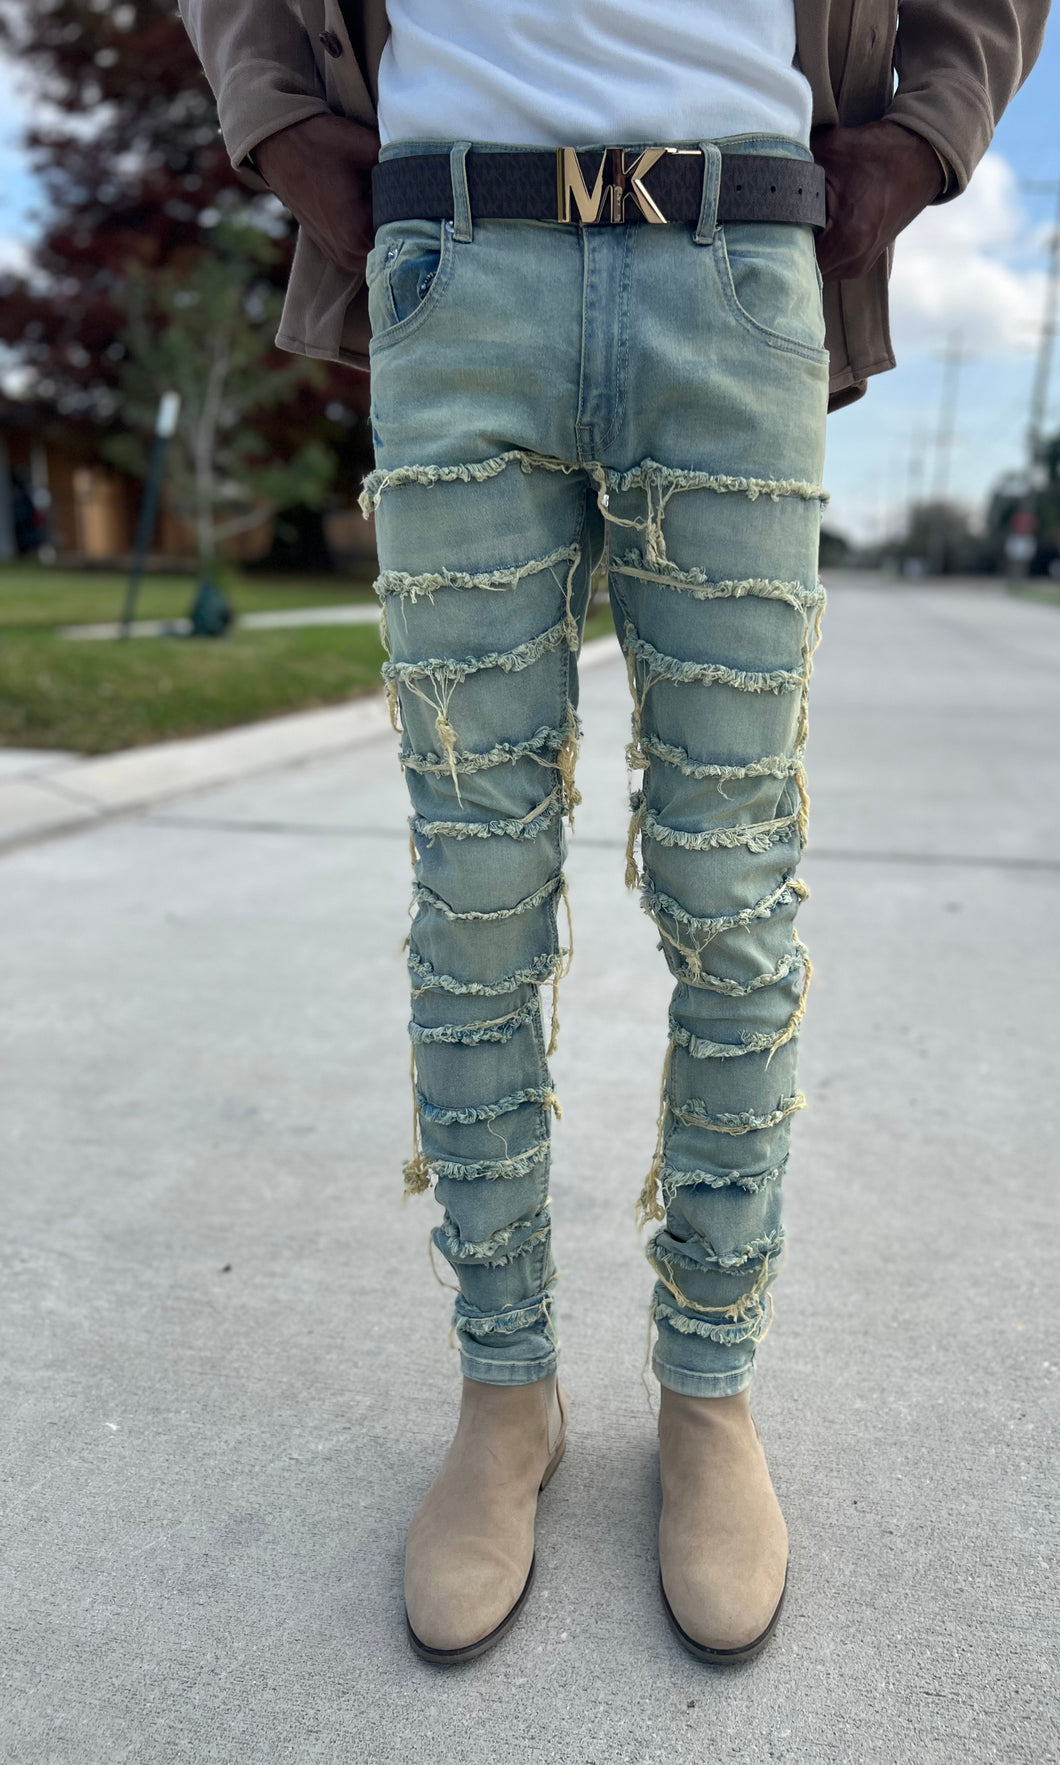 Indigo Twill Skinny Jeans